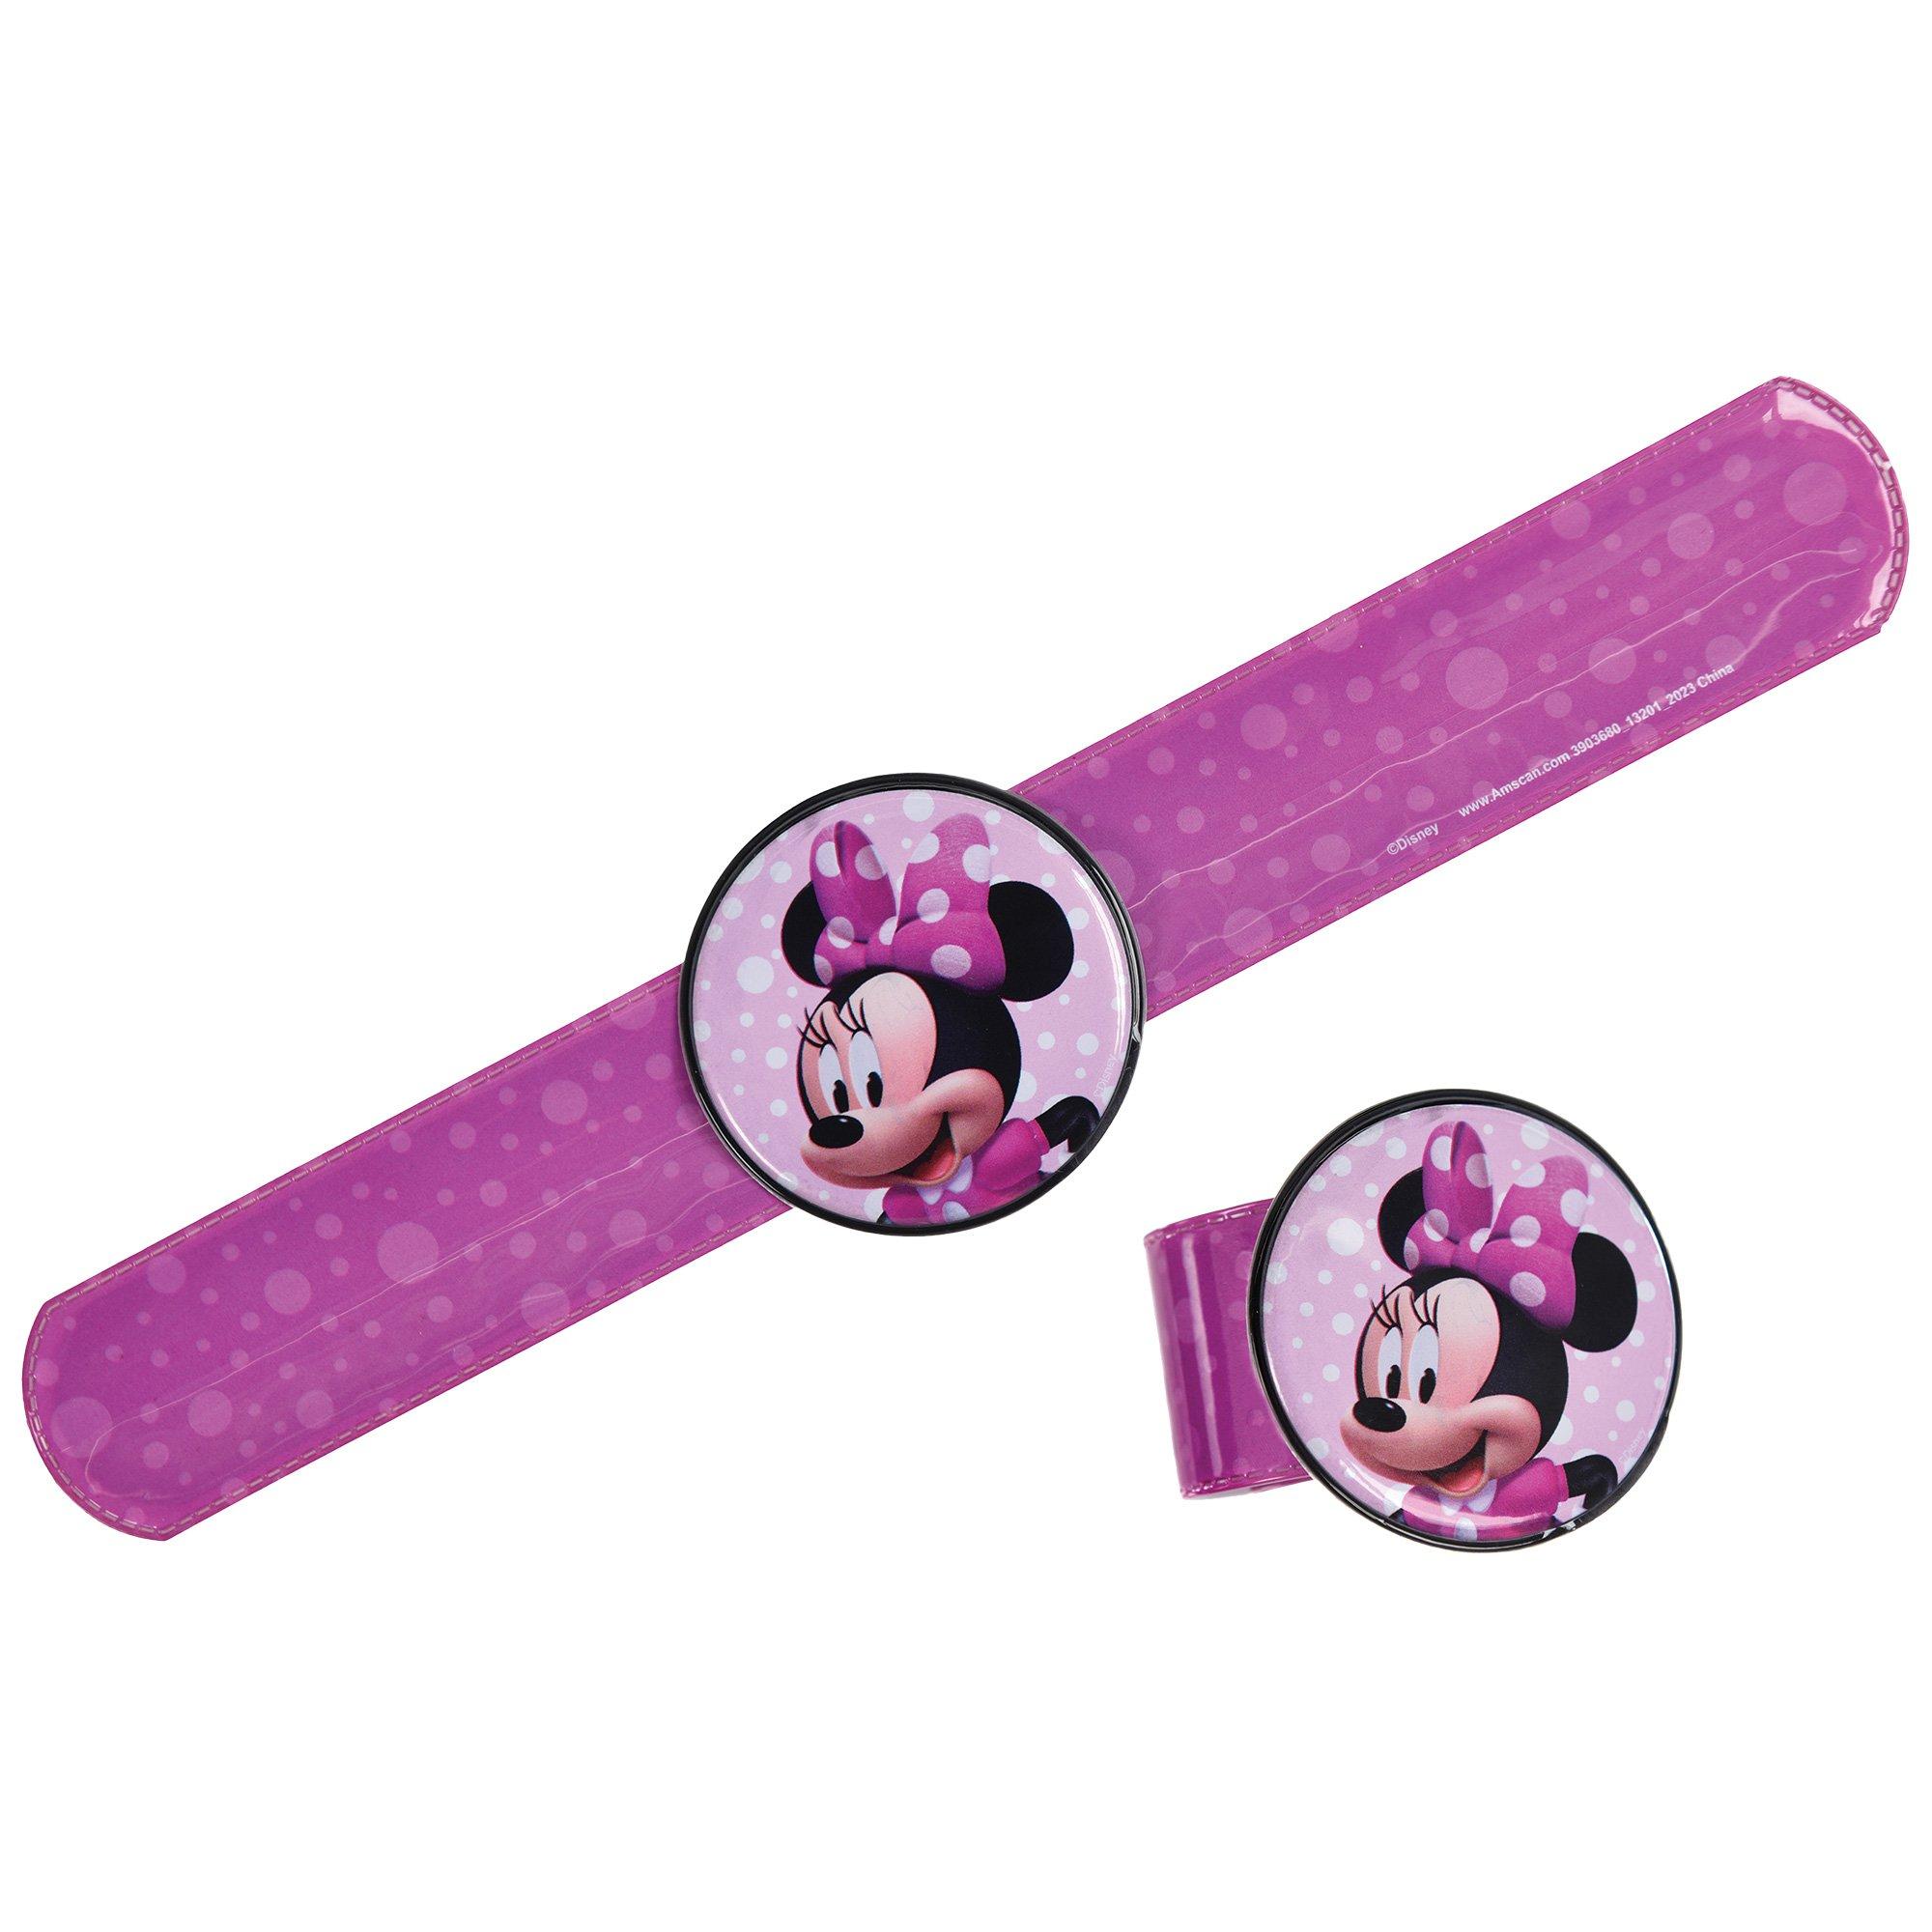 Minnie Mouse Slap Bracelets, 8ct - Disney Junior